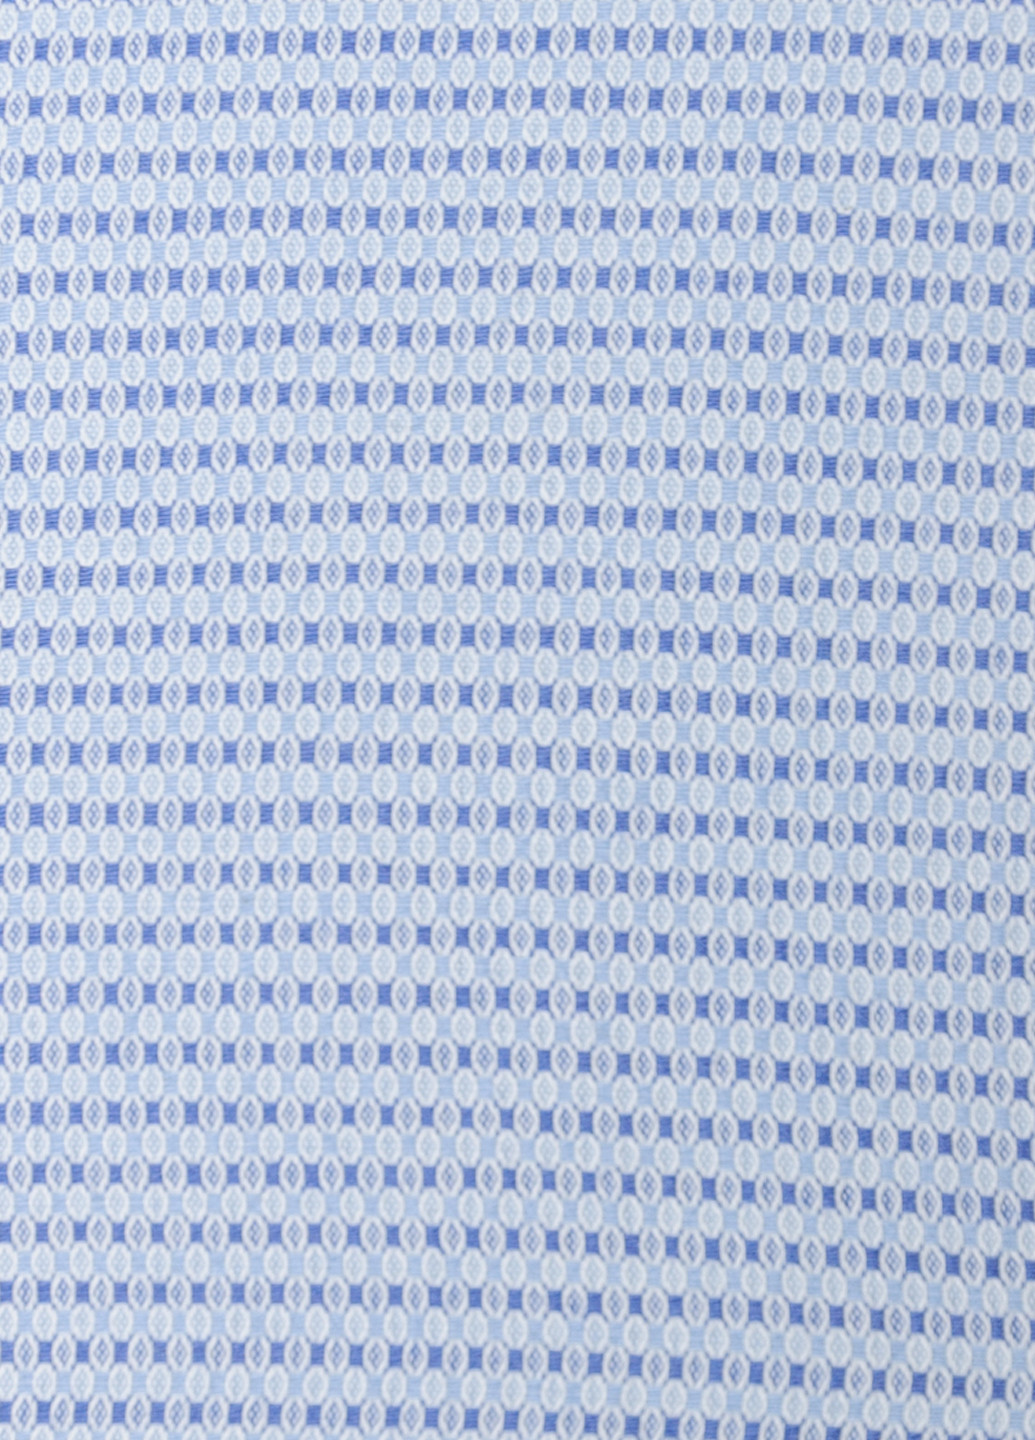 Голубой рубашка однотонная Arber